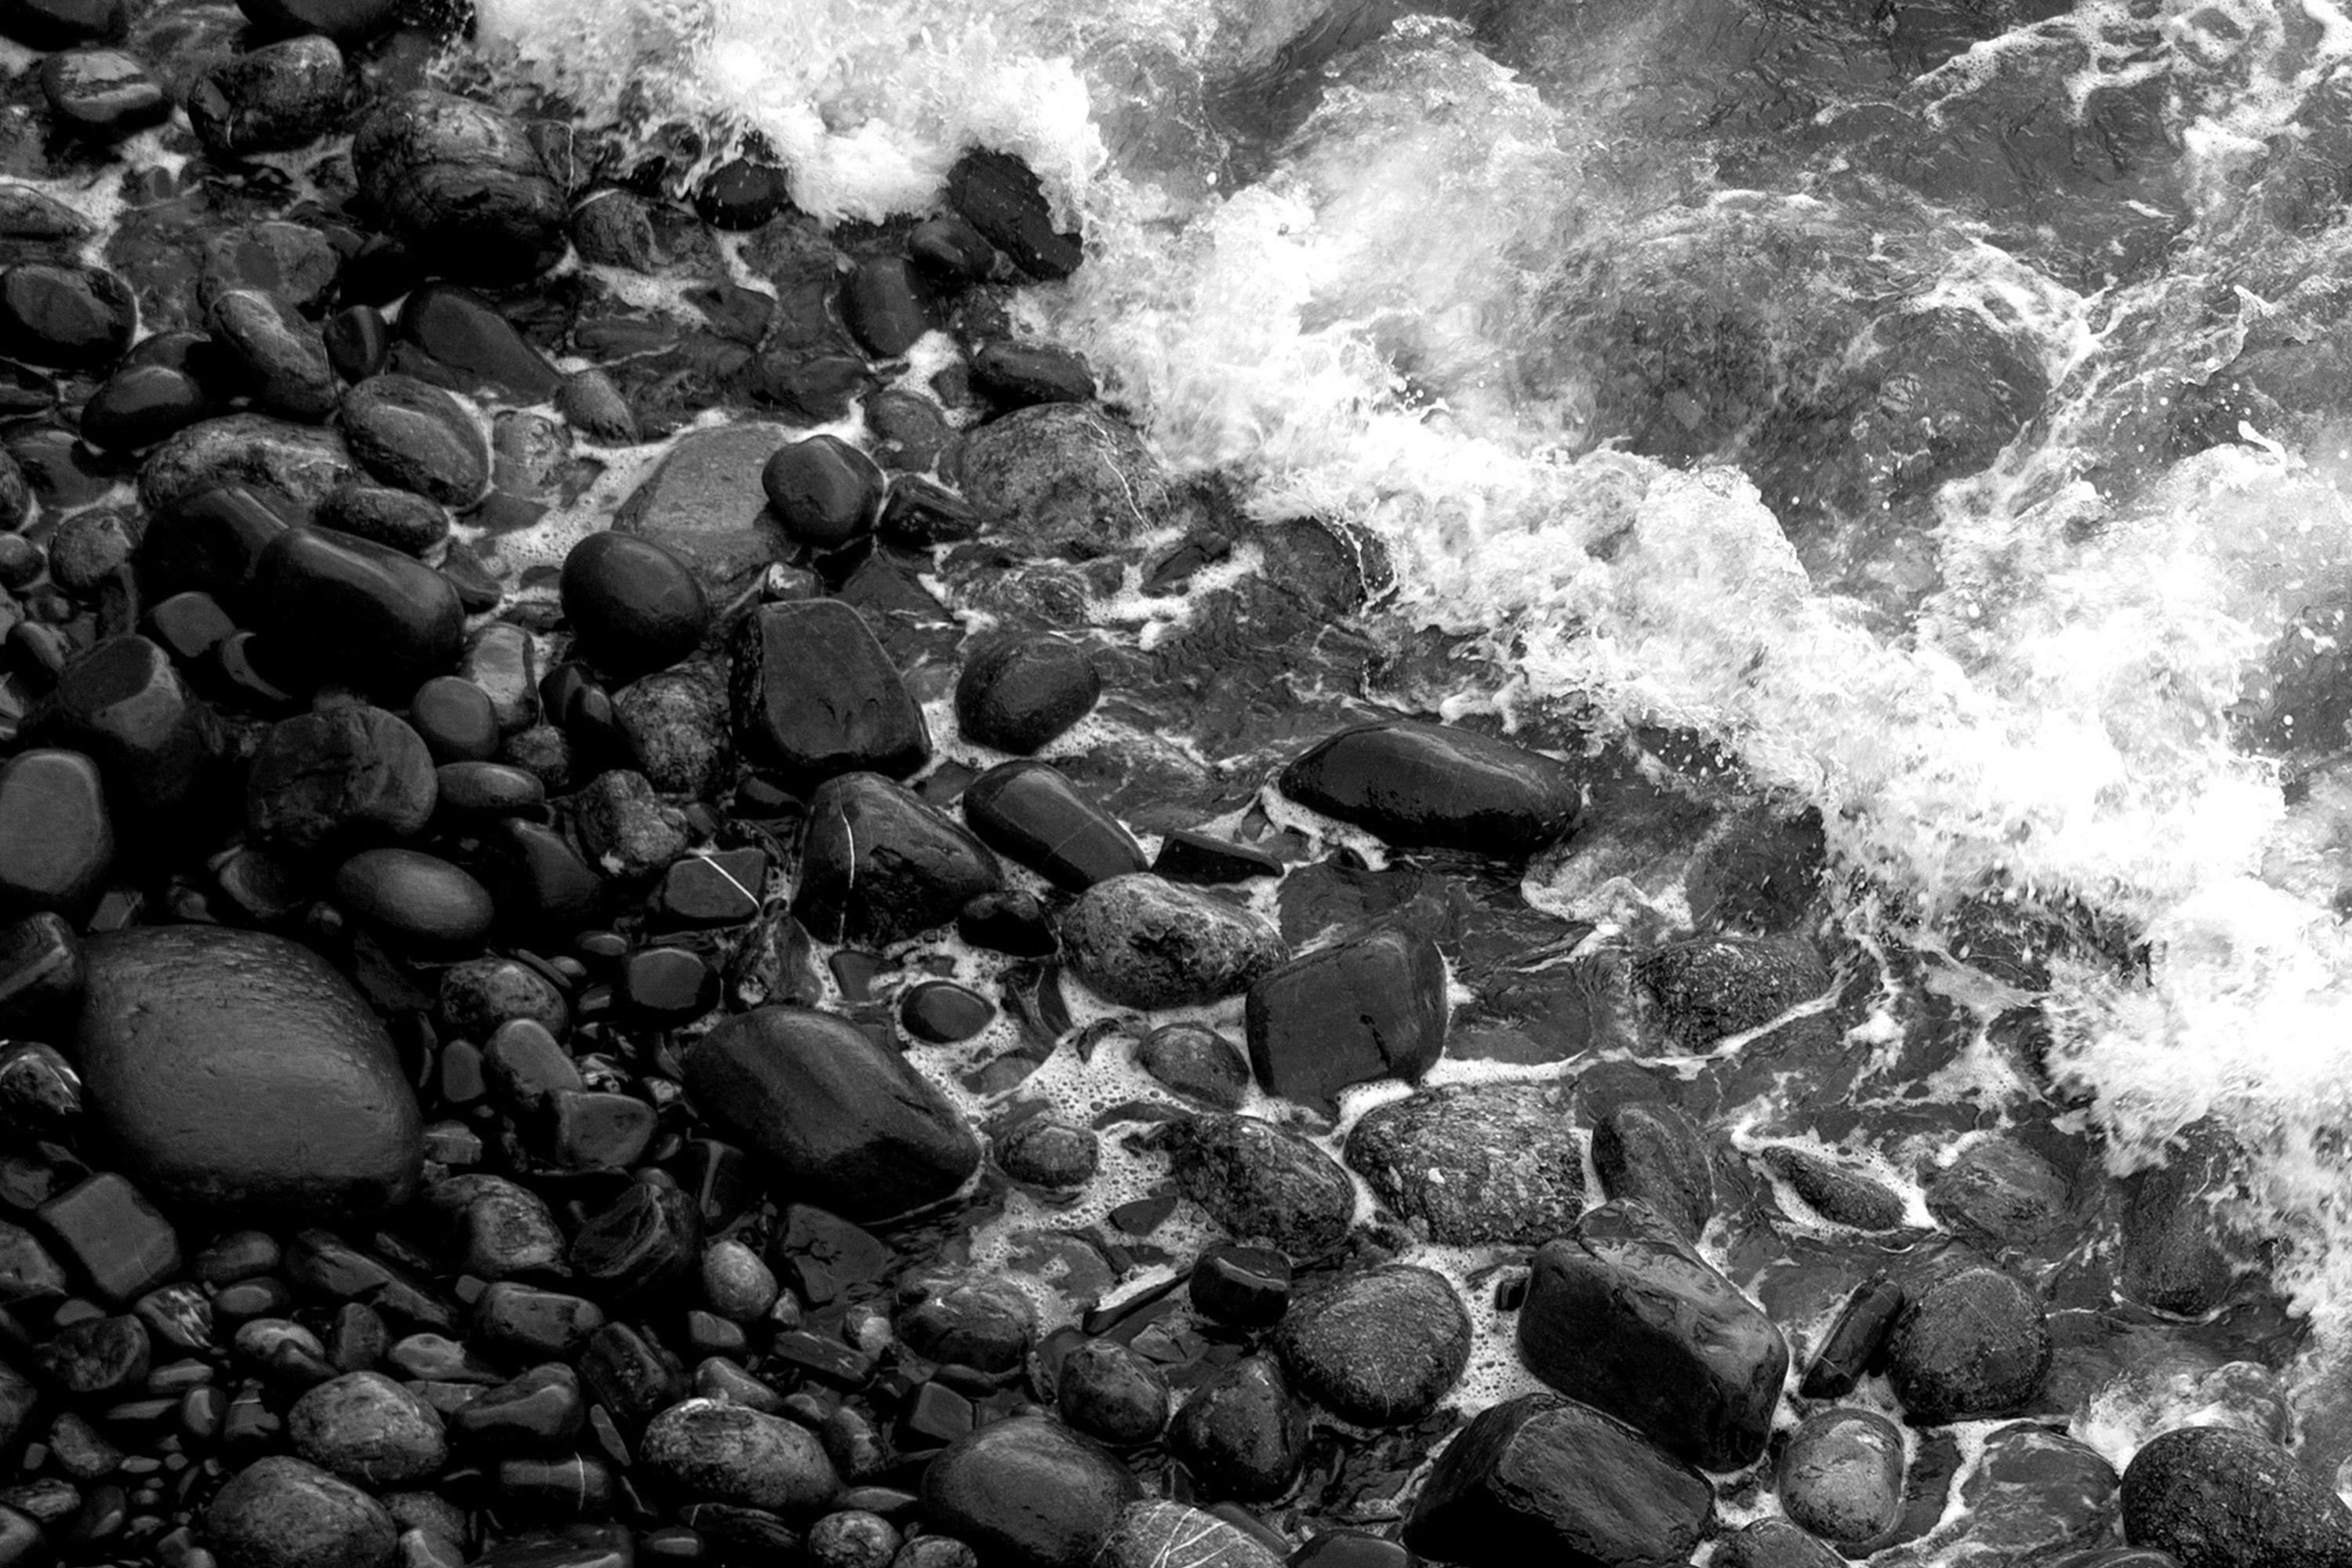 Black & White Shore Line, Giclée-Druck in limitierter Auflage vom britischen Pebble Beach (Schwarz), Landscape Photograph, von Kind of Cyan